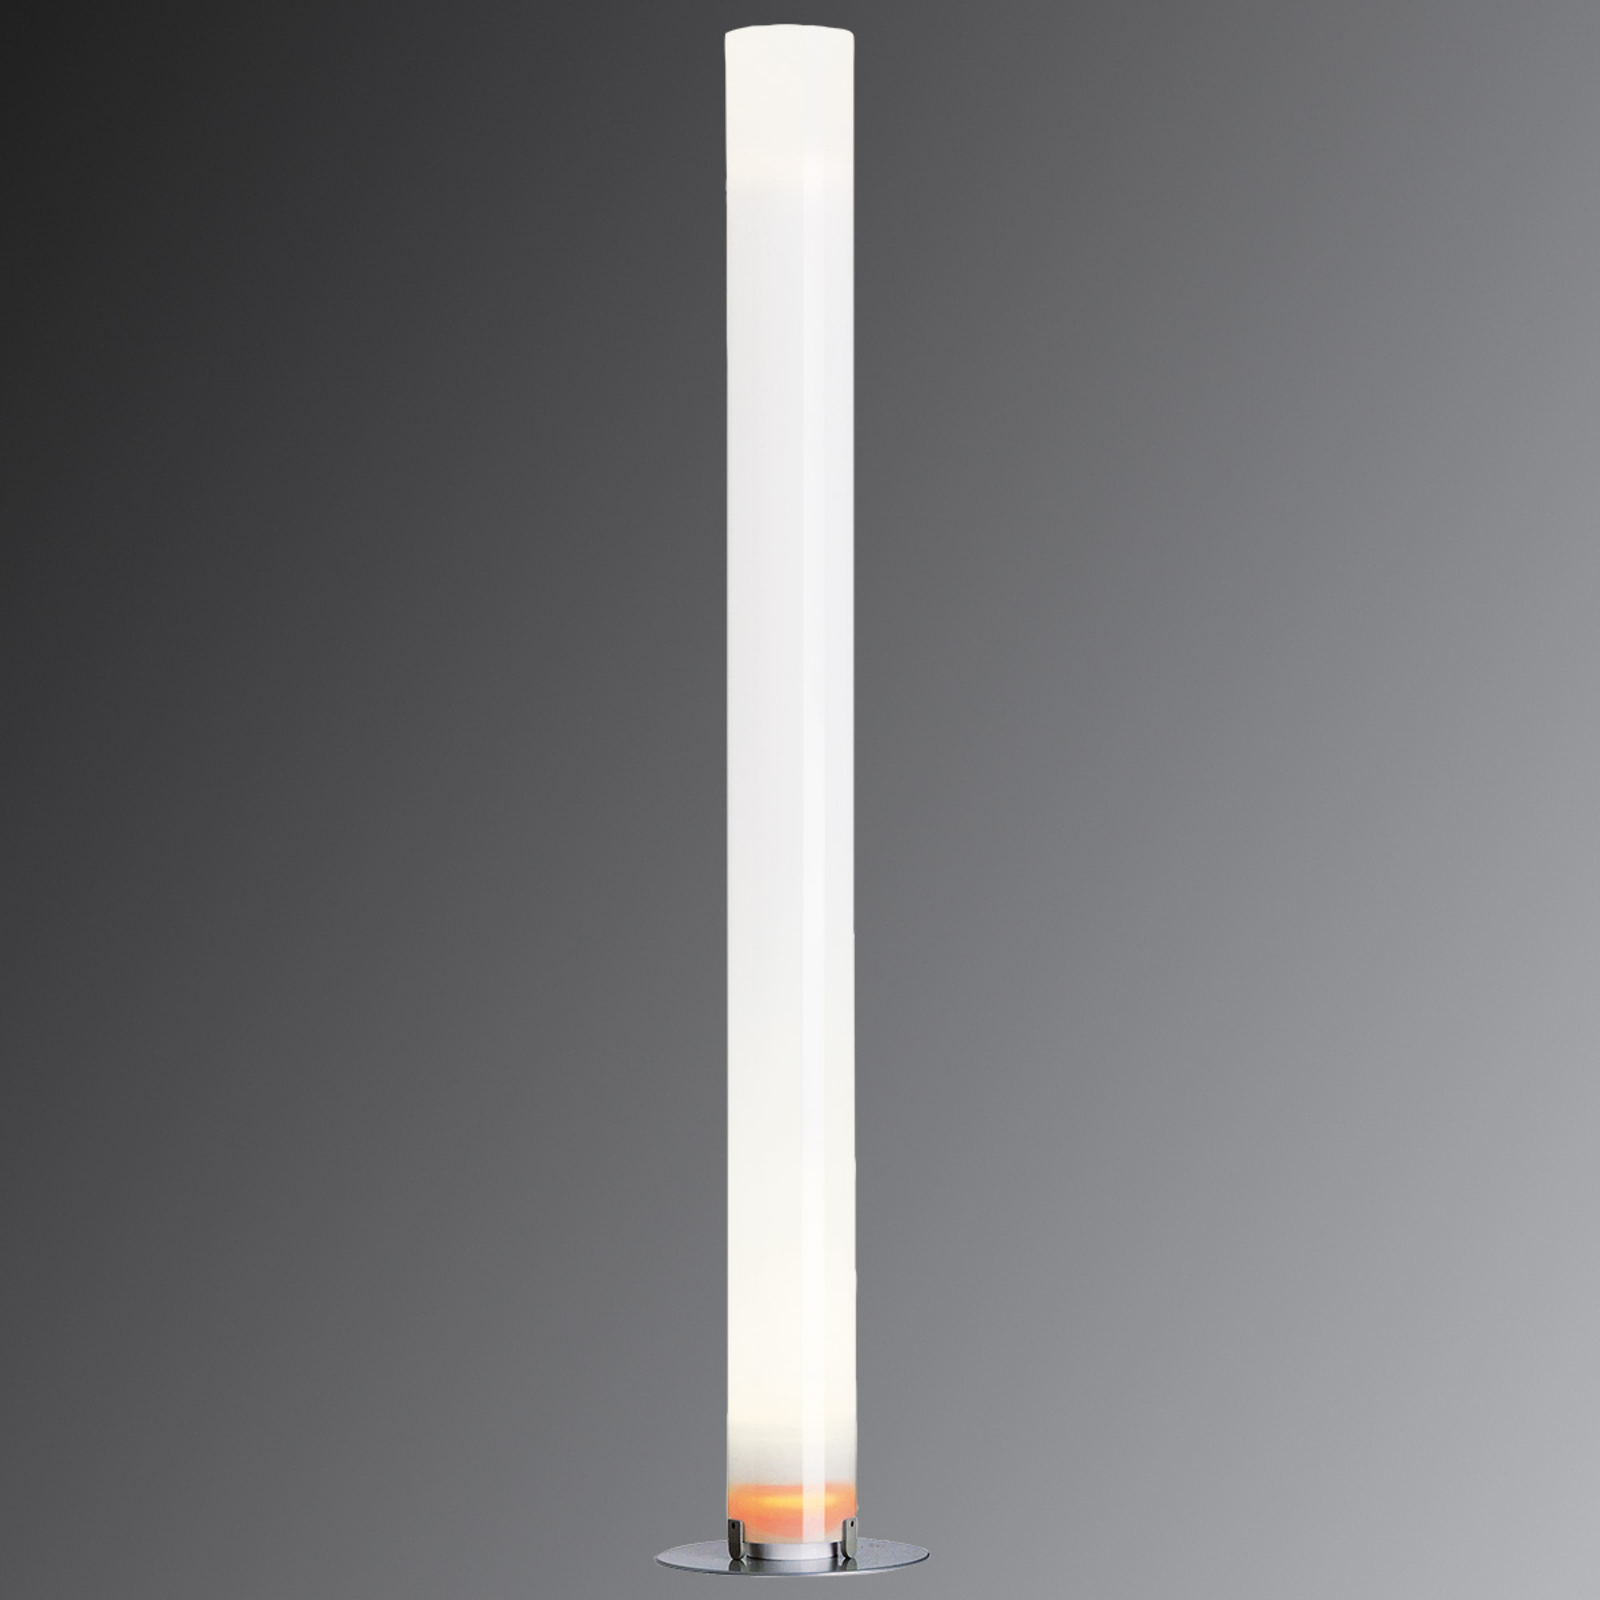 Stojací lampa FLOS Stylos ve tvaru válce, výška 200 cm